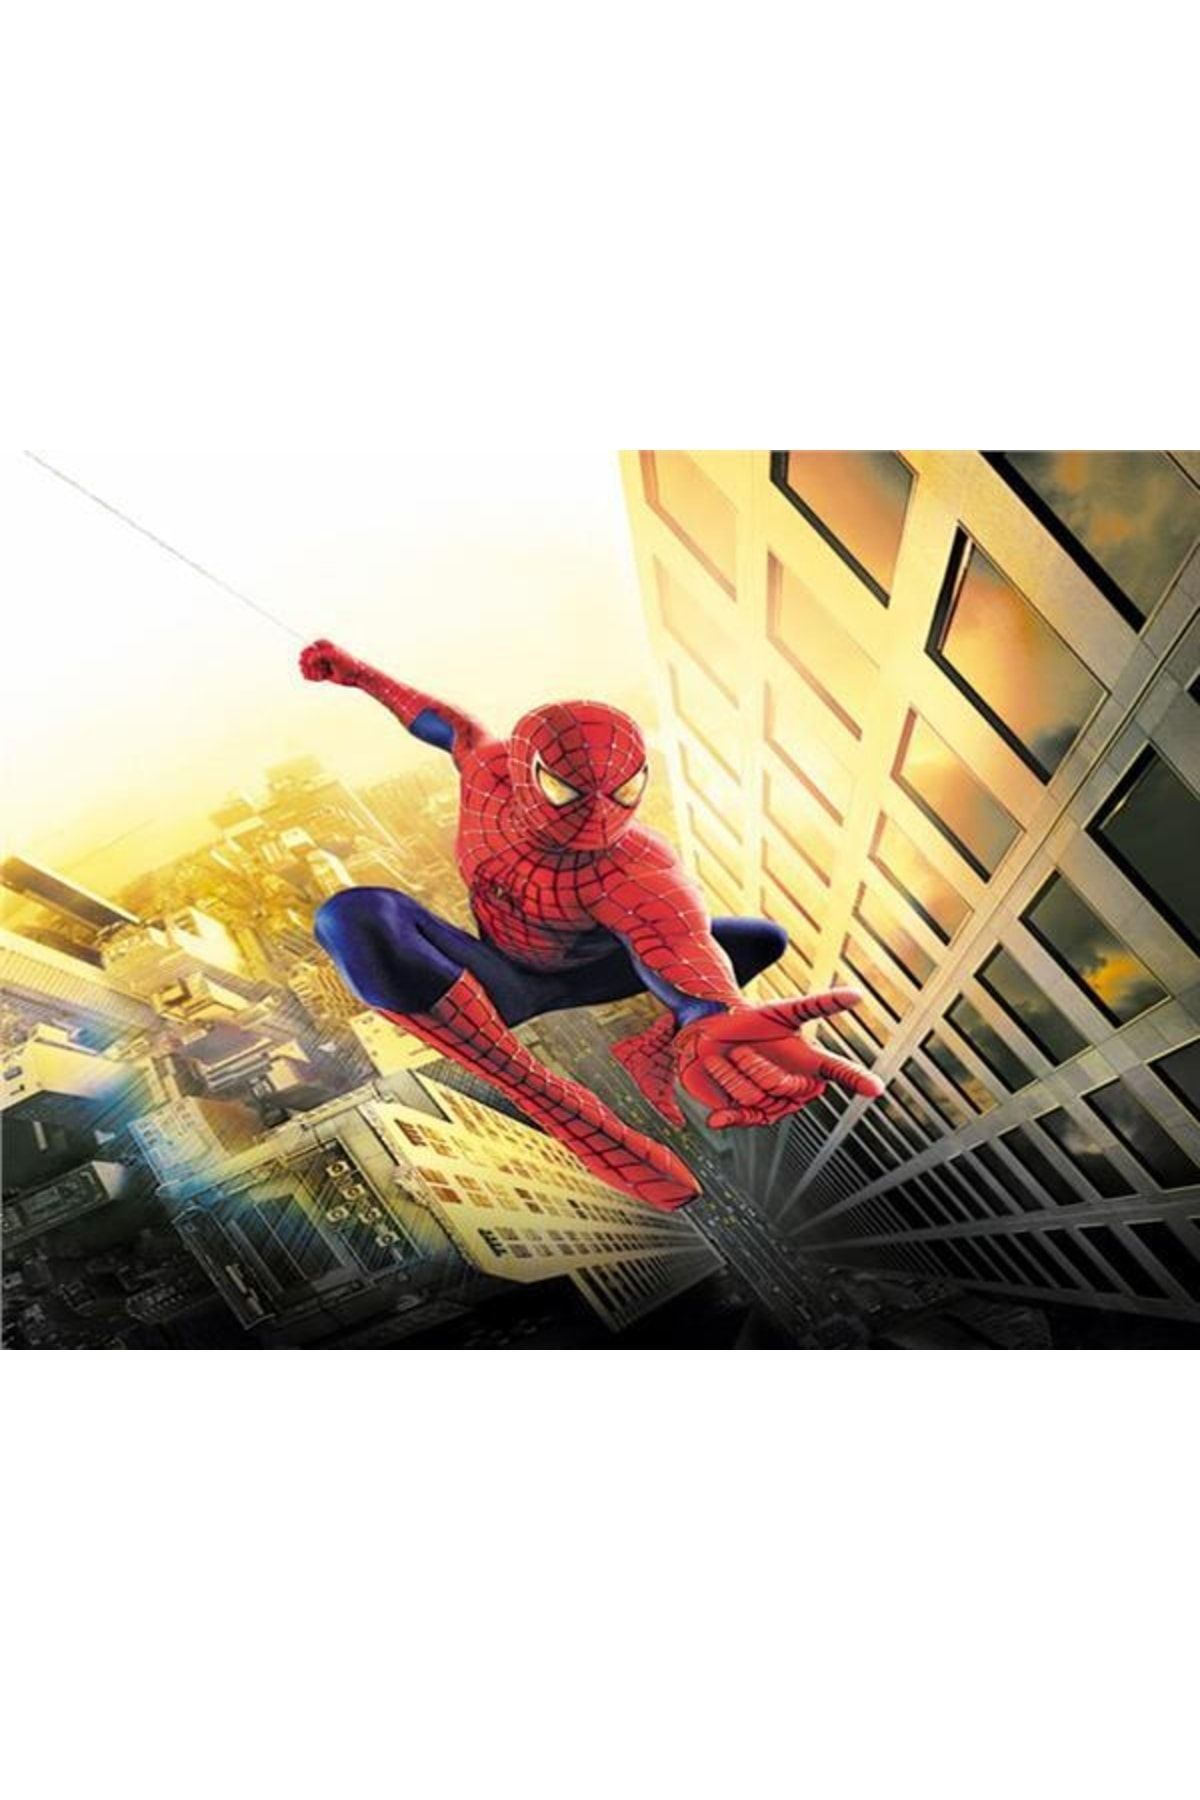 EkoDekor 3boyutluduvarkagitlari Örümcek Adam Spiderman 3d Çocuk Odası Duvar Kağıdı Kanvas Tek Parca